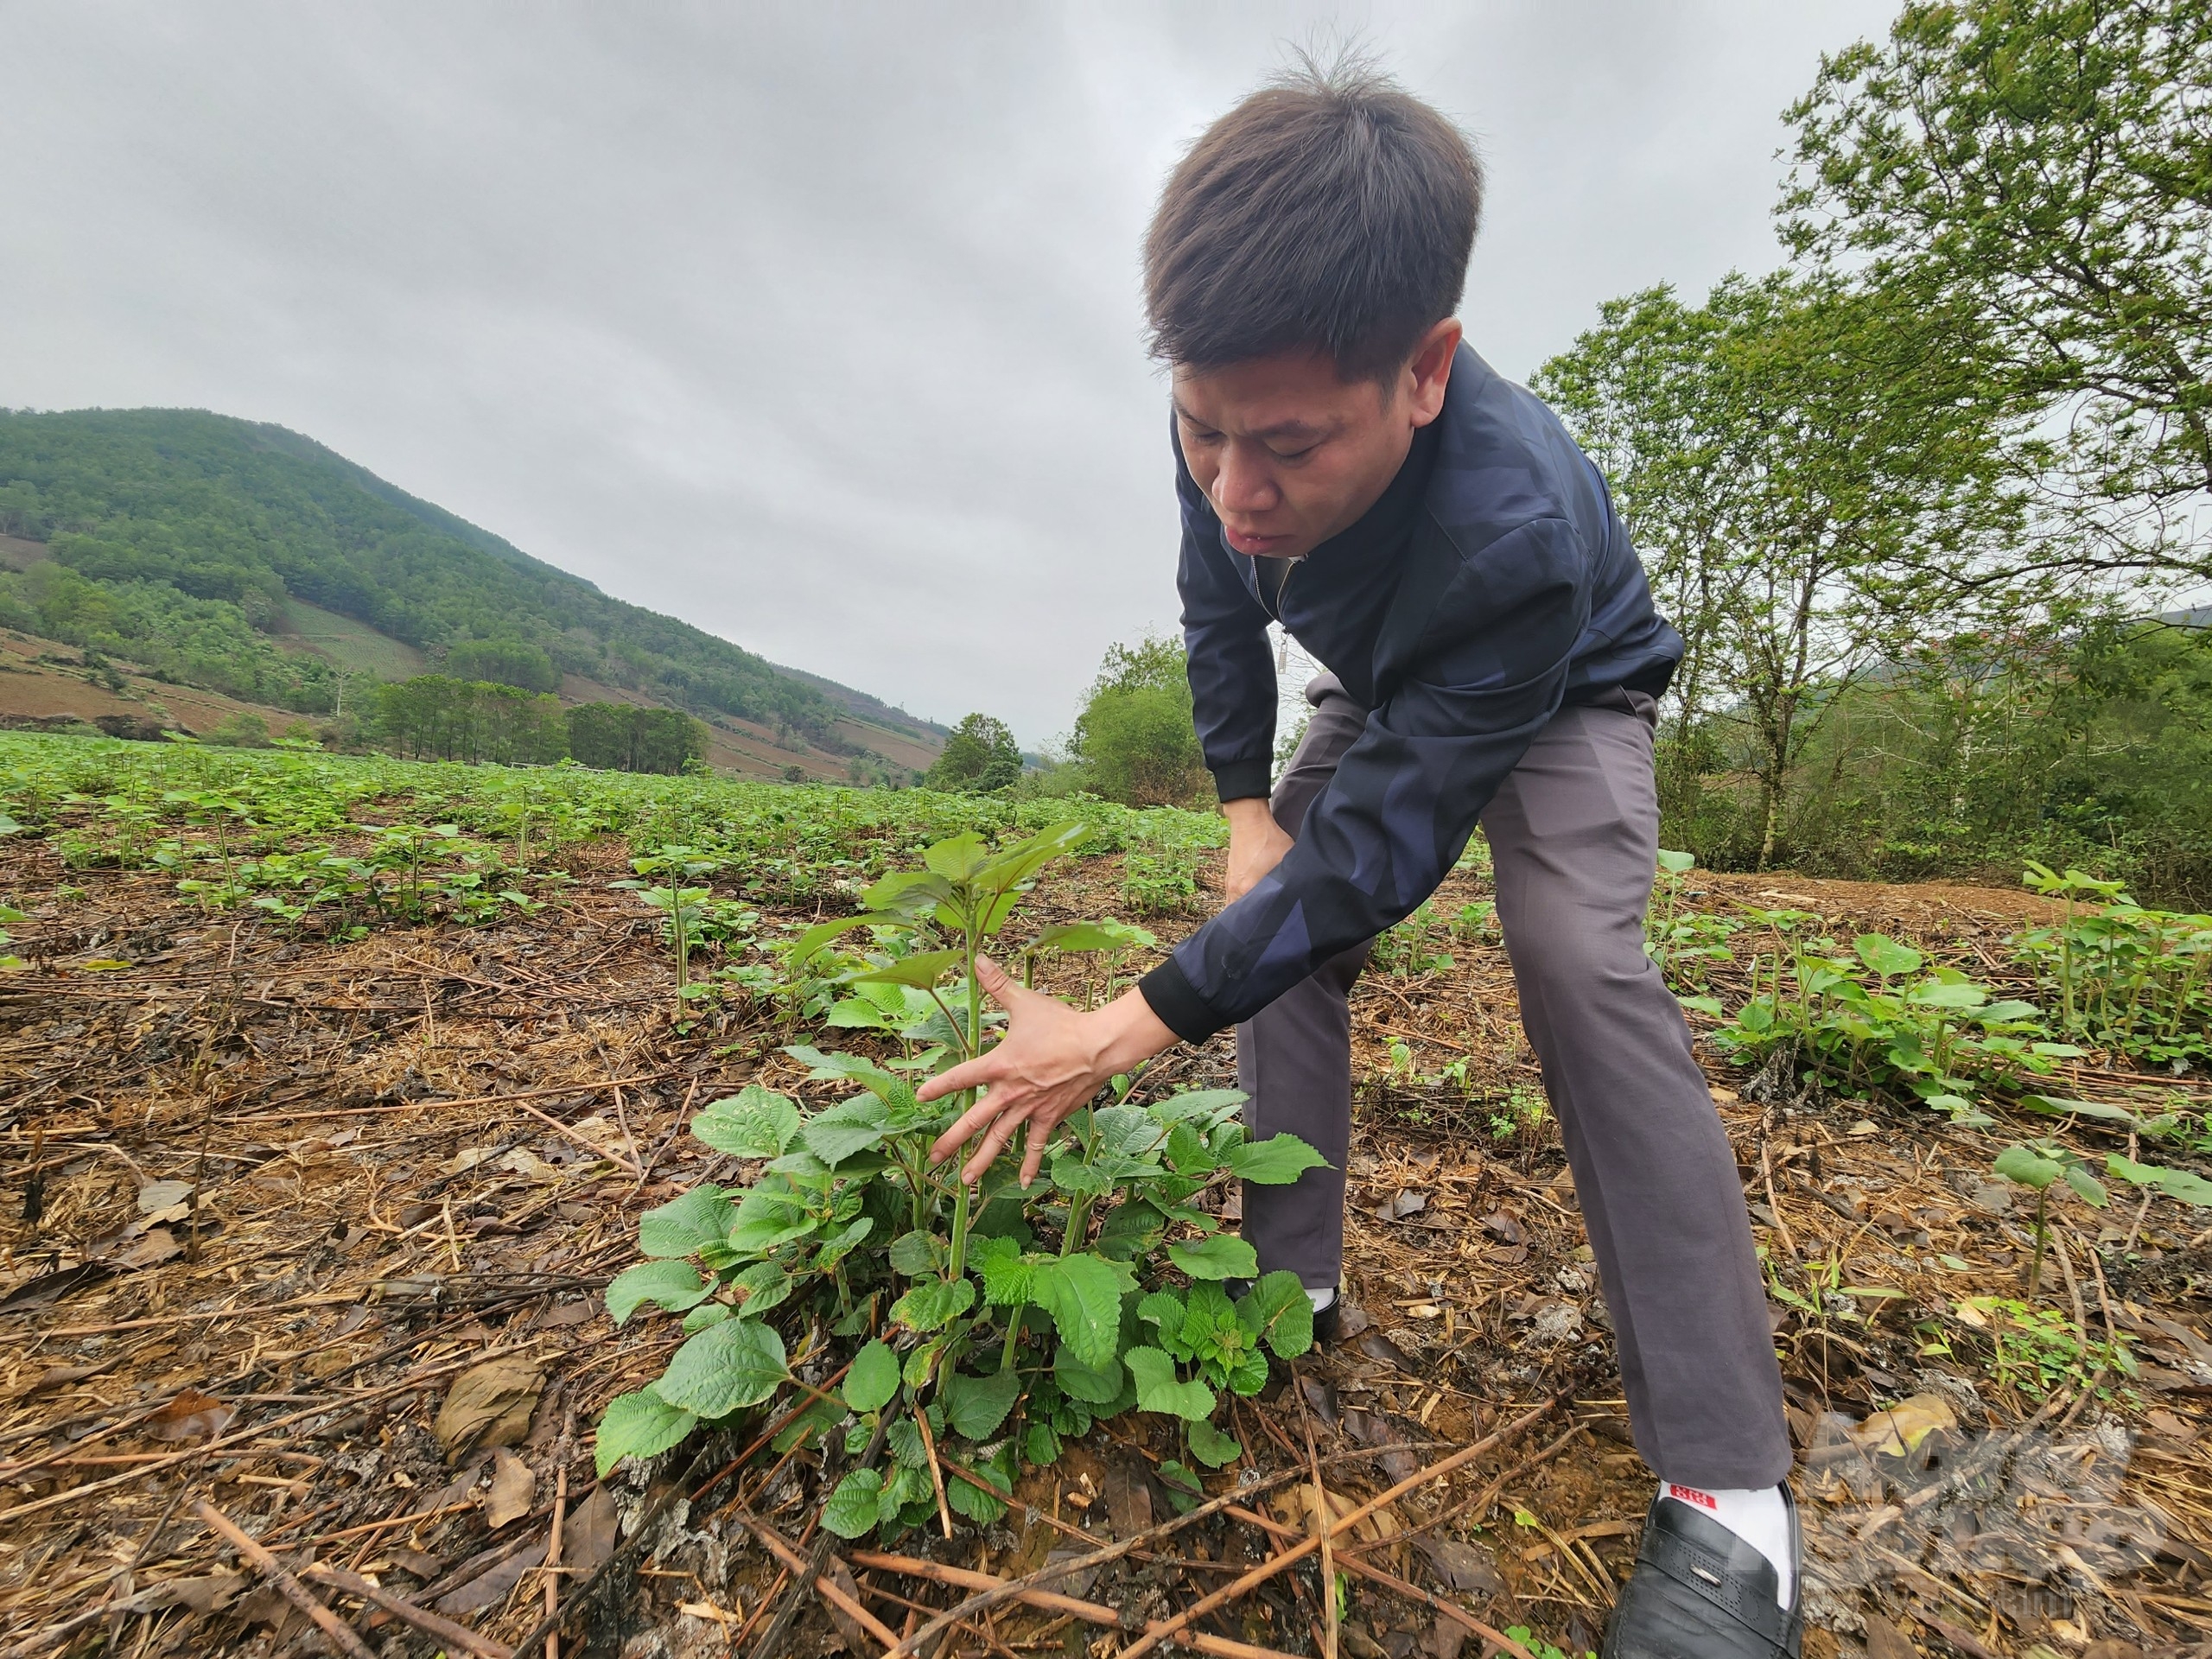 Cán bộ Nguyễn Văn Loan kiểm tra sự phát triển của cây gai xanh. Ảnh: Quốc Toản.